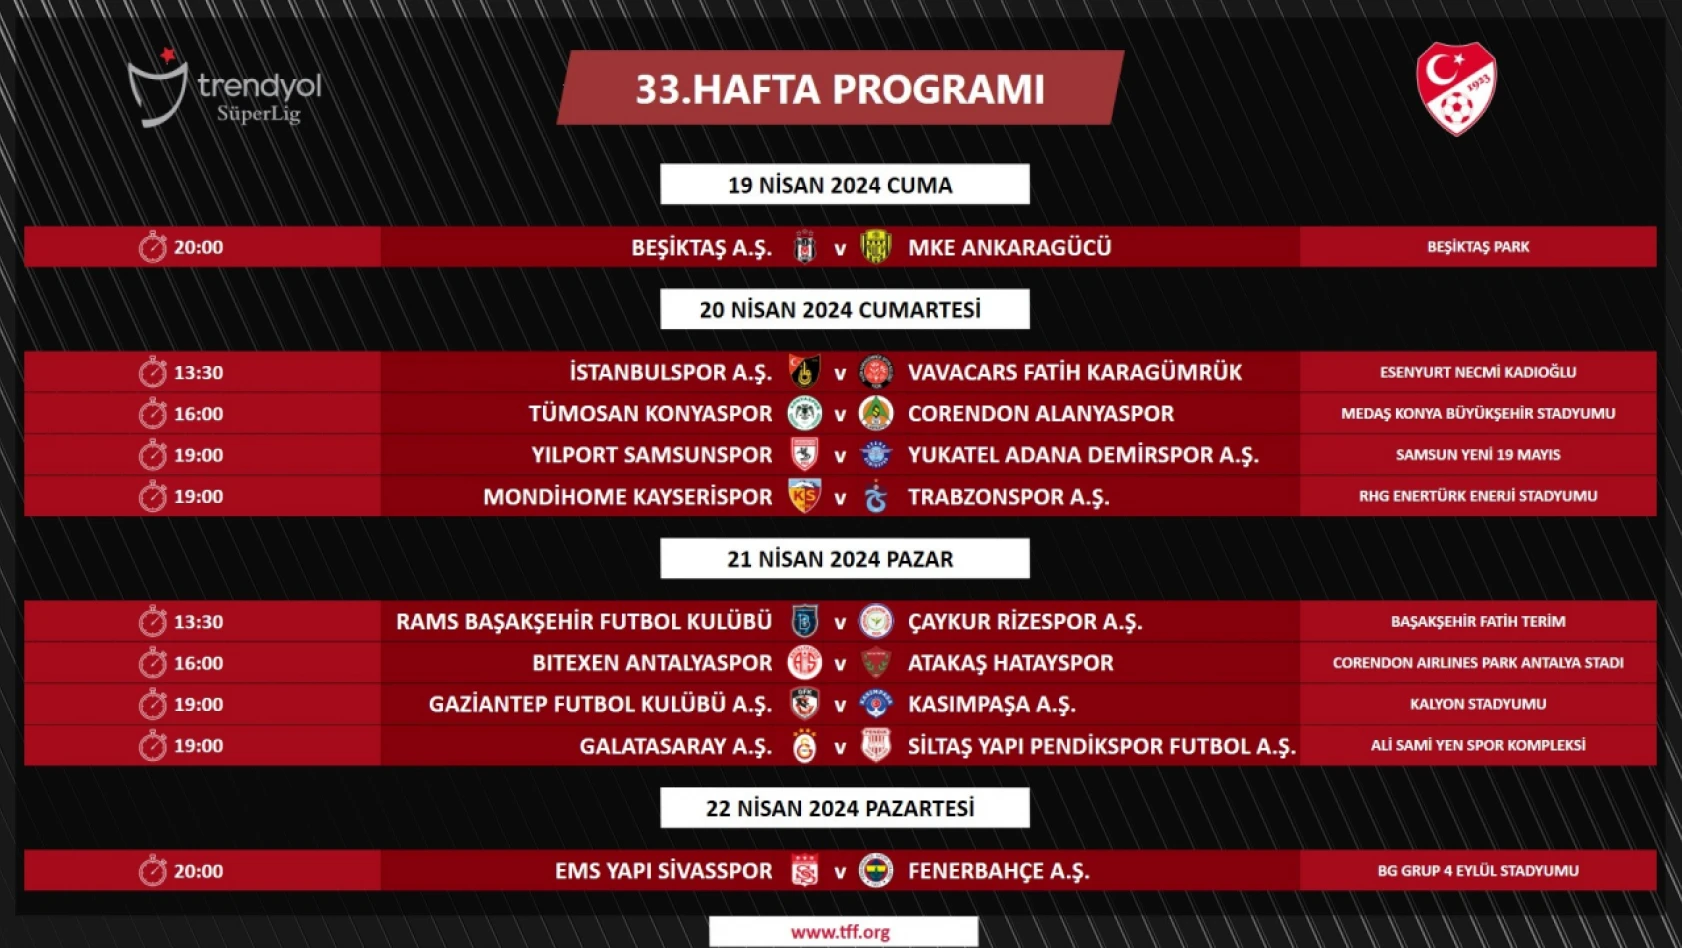 Kayserispor - Trabzonspor maçının günü ve saati belli oldu